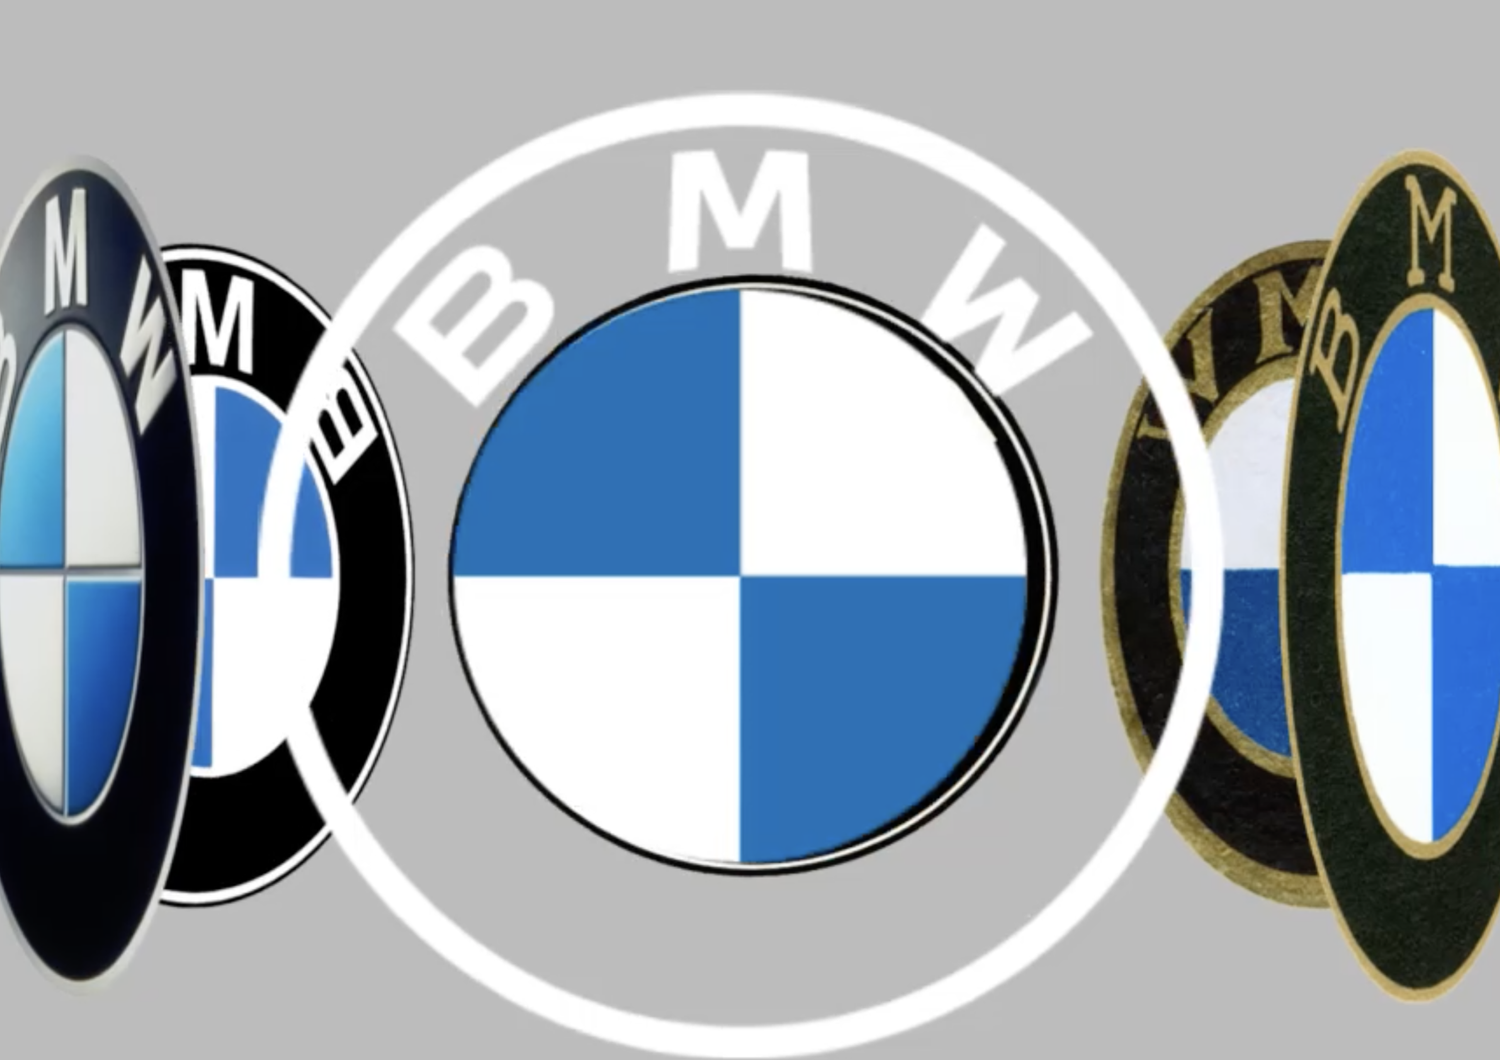 La vera storia del logo Bmw, e perché l'azienda ha deciso di cambiarlo